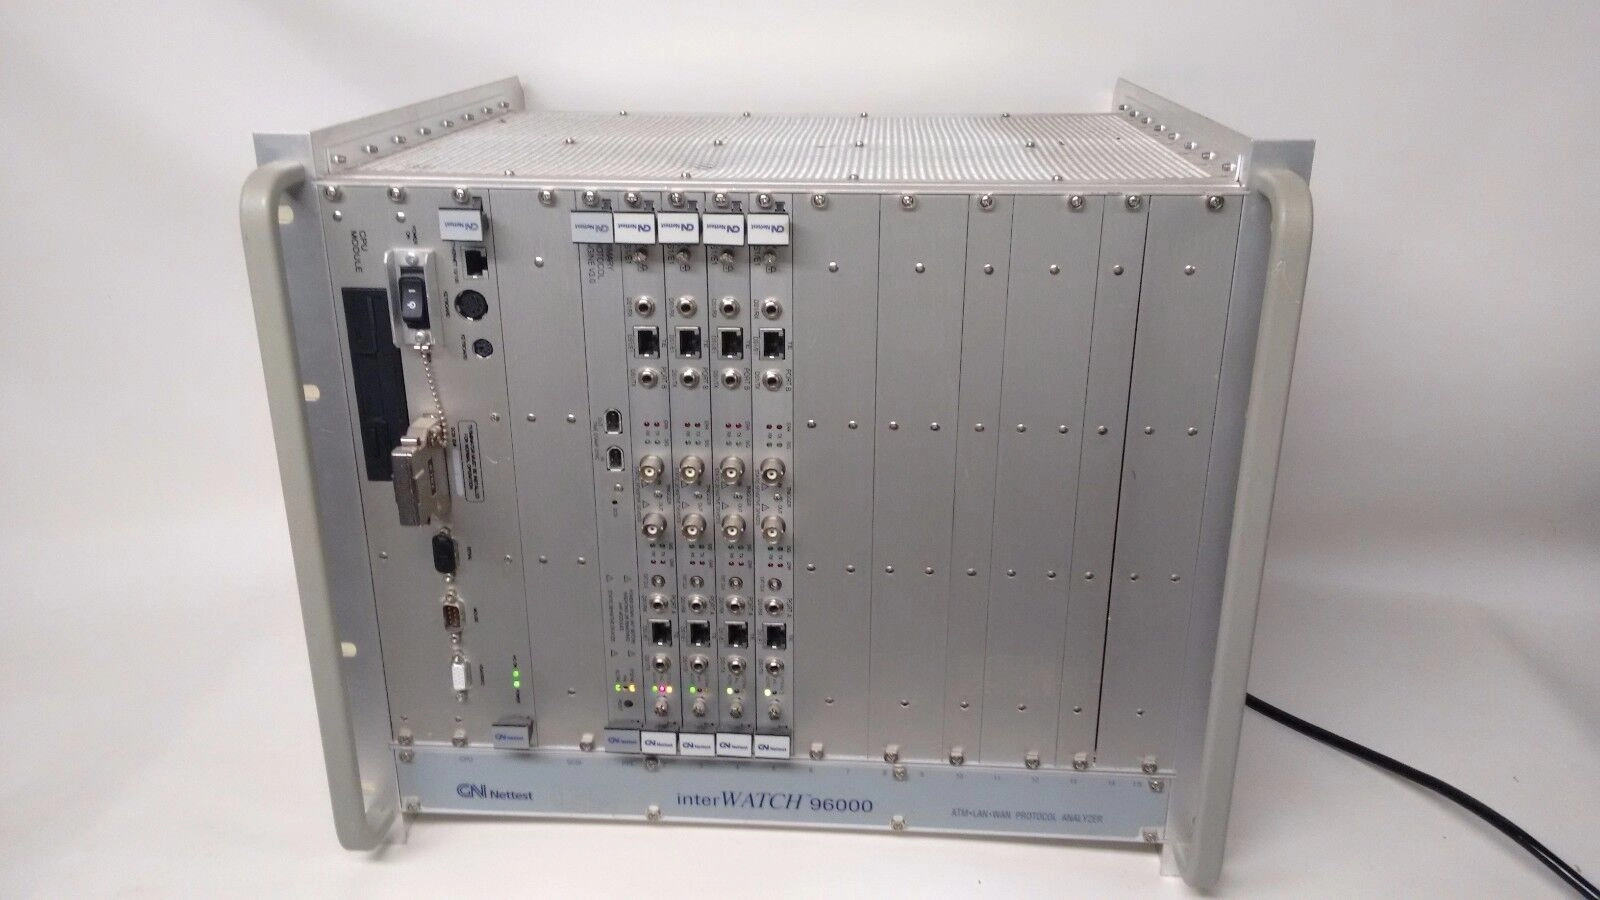 GN Nettest interWATCH 96000 ATM / LAN / WAN Protoc